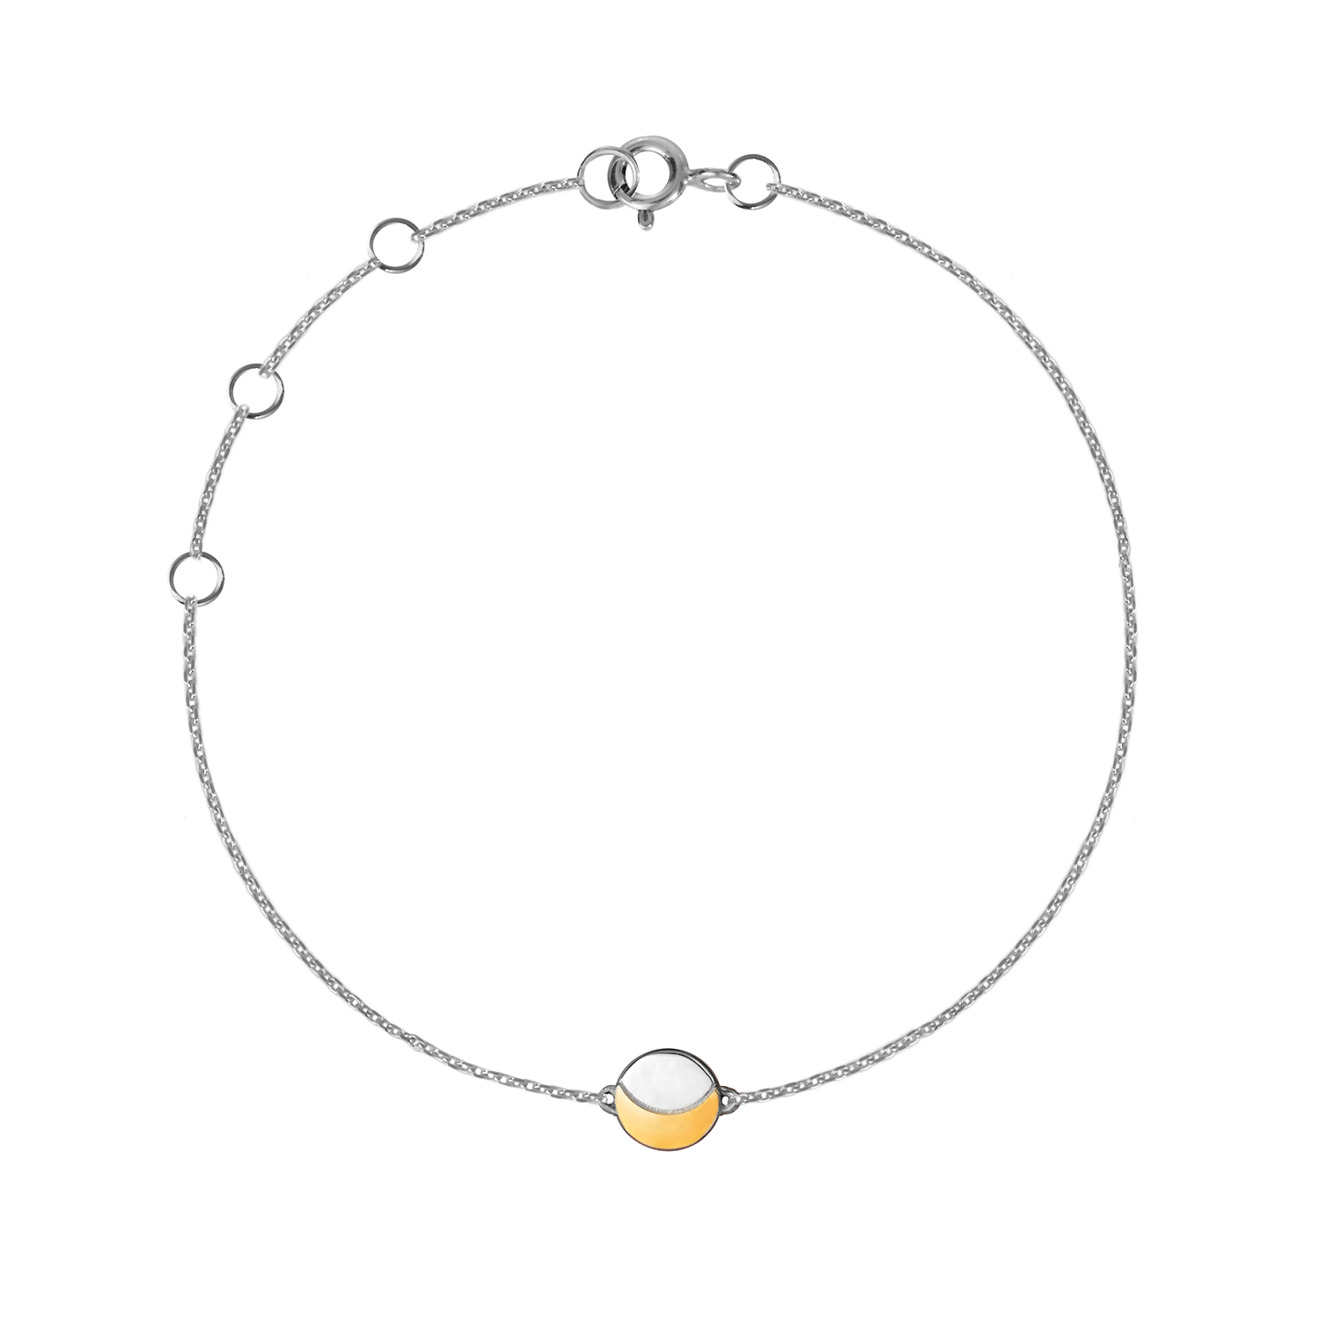 LUSIN Jewelry Тонкий браслет из серебра Old Moon Bracelet lusin jewelry моносерьга из серебра на тонкой цепочке sun